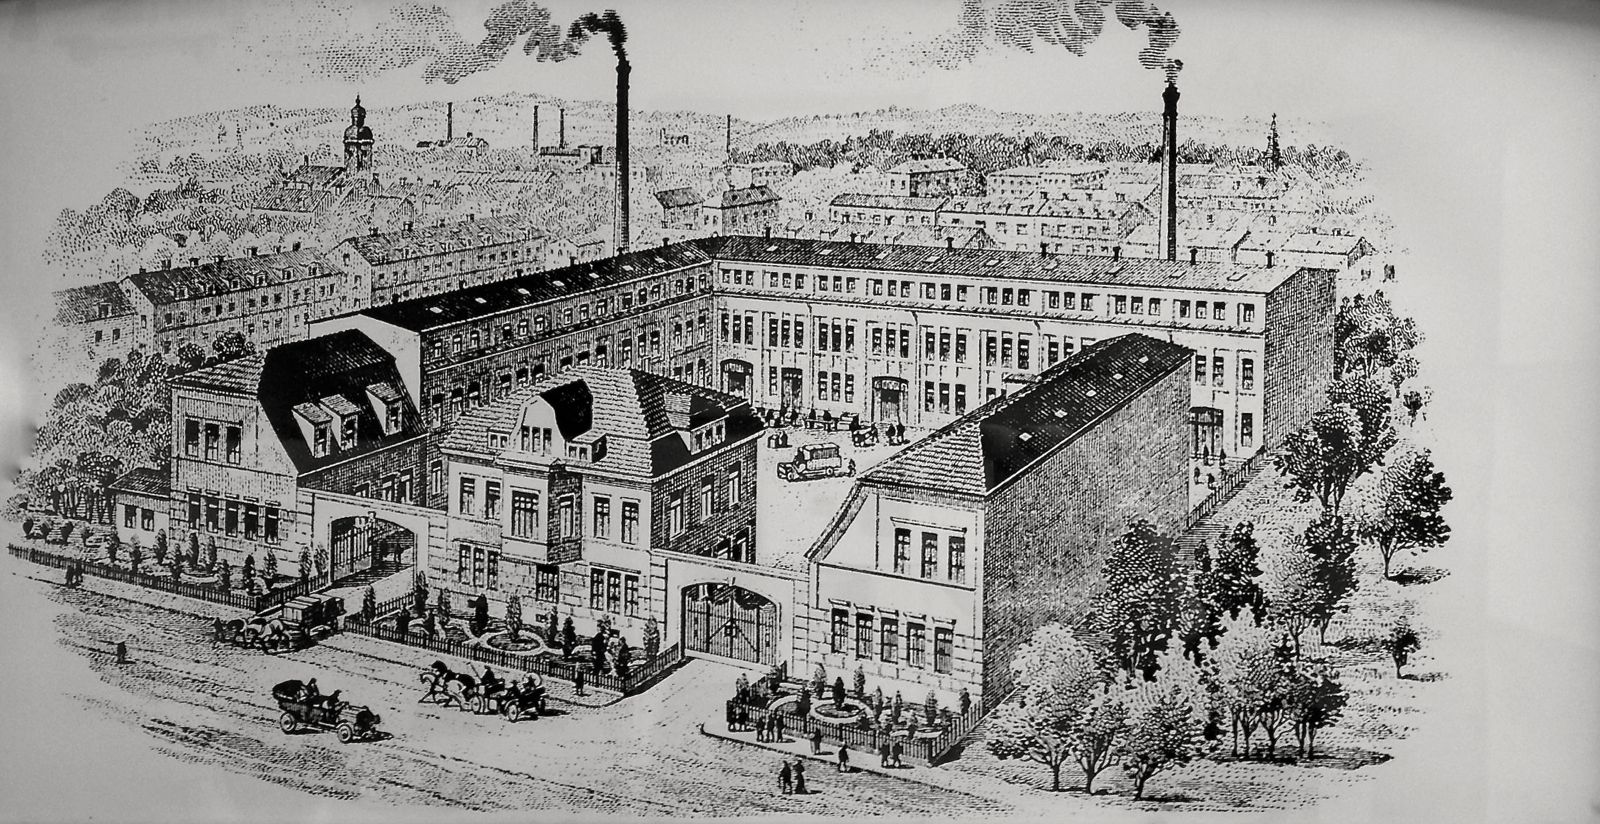 Der Briefkopf der ehemaligen Heizkörperfabrik machte aus der tatsächlich kleinen eine fiktive grosse Fabrik mit Kaminen, die nie existierten.